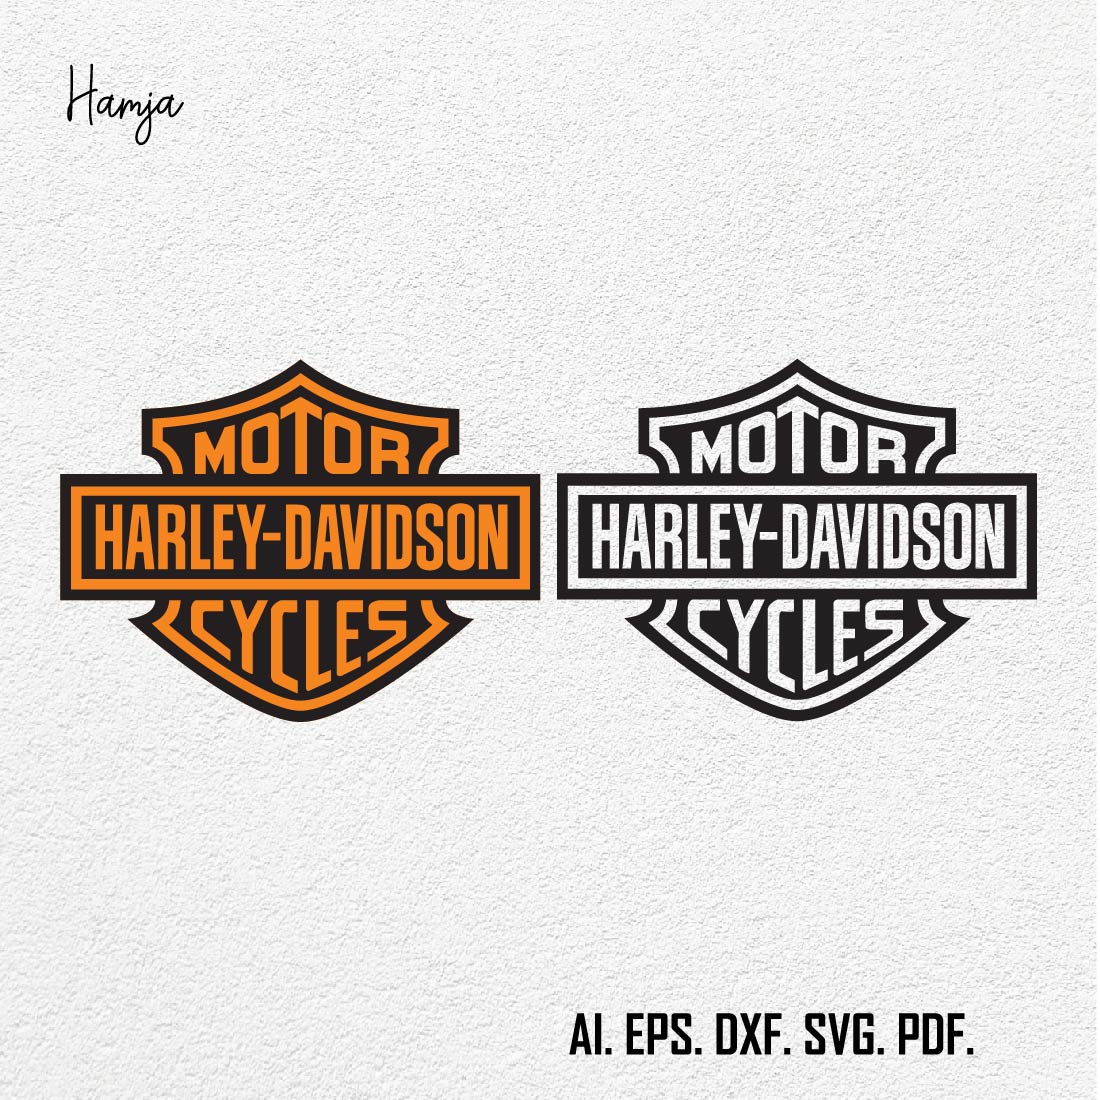 Harley davidson motor svg Gift For Man and Boy SVG PNG EPS dxf,harley davidson logo vector set preview image.